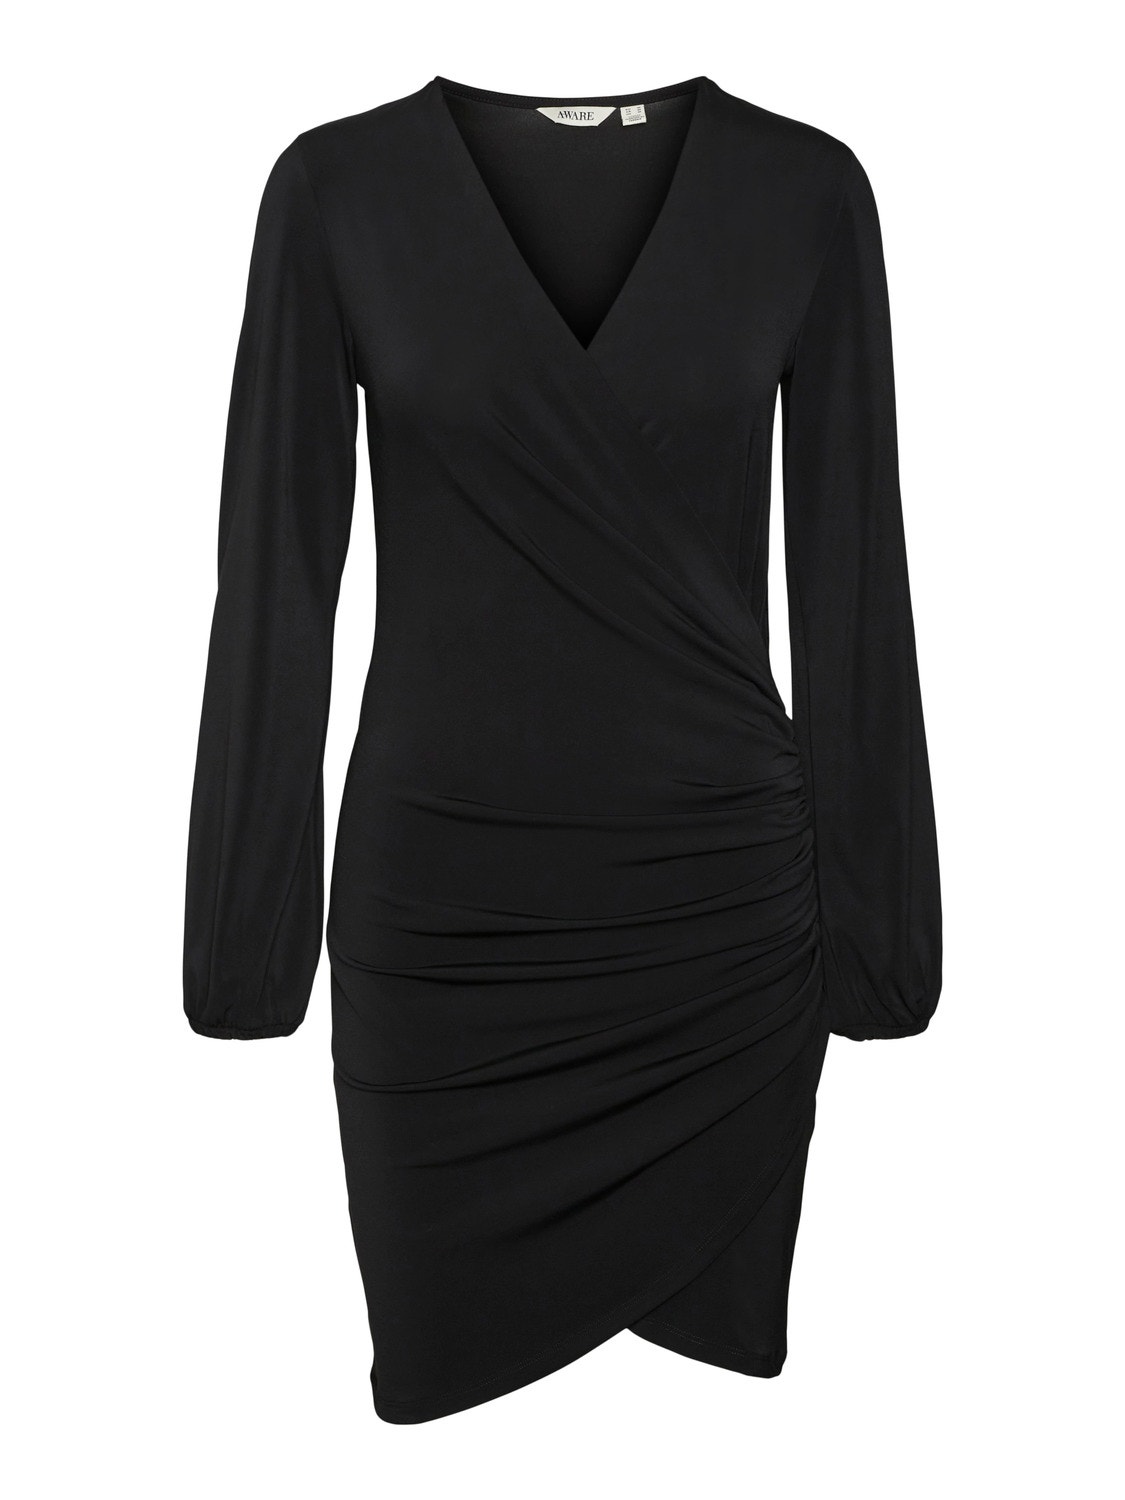 Vero Moda VMHADLEY Short dress -Black - 10299645